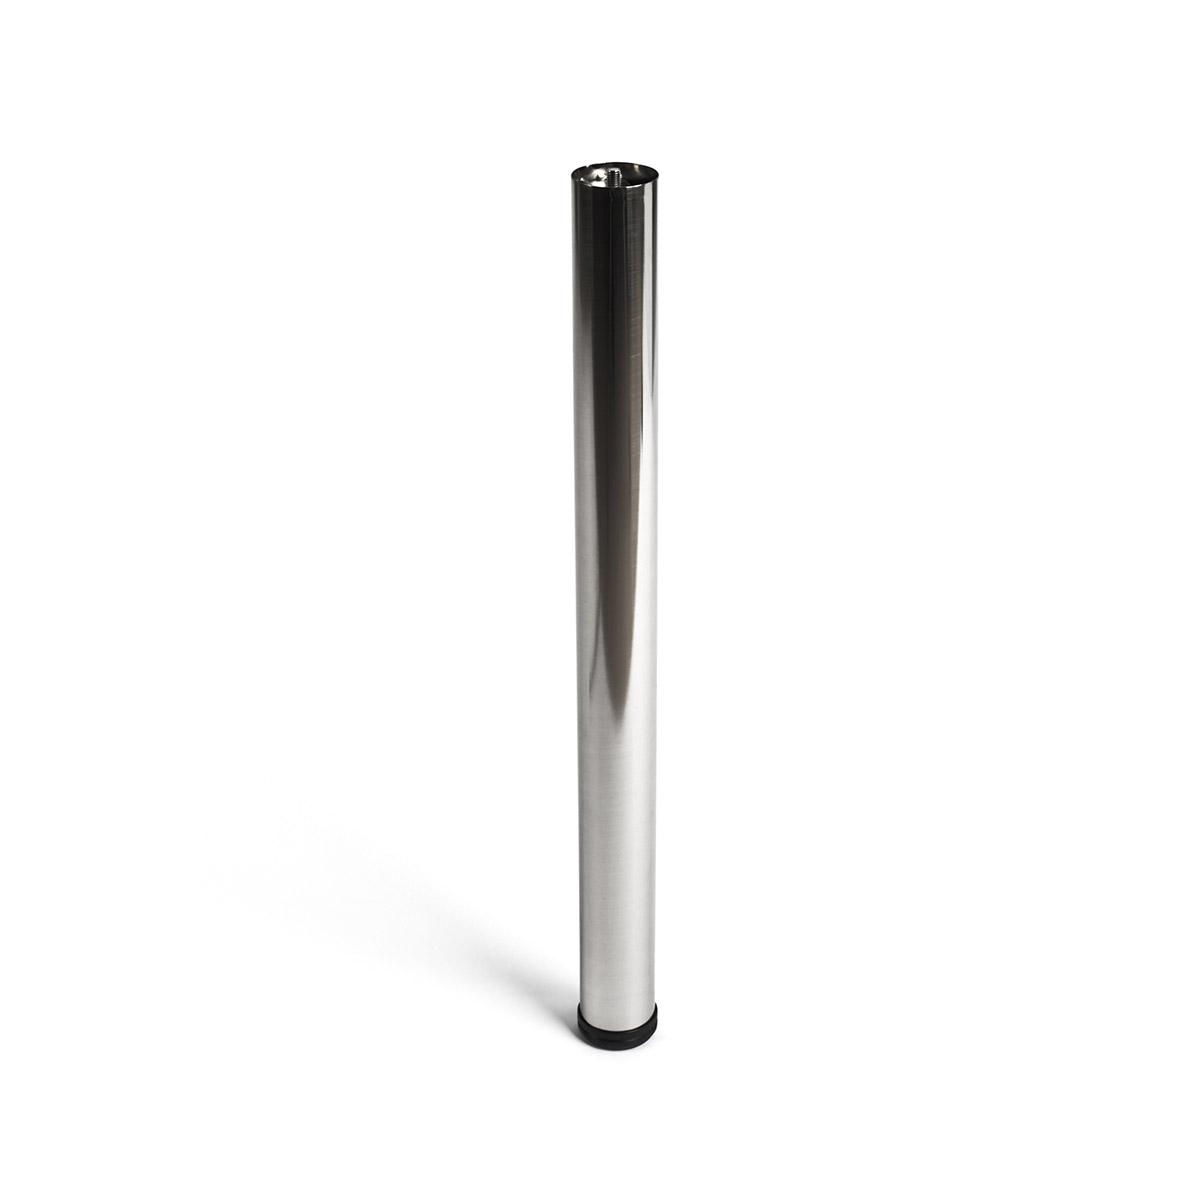 Pata de acero cilíndrica con una altura de 710 mm y acabada en níquel satinado. Dimensiones: 60x60x710 mm